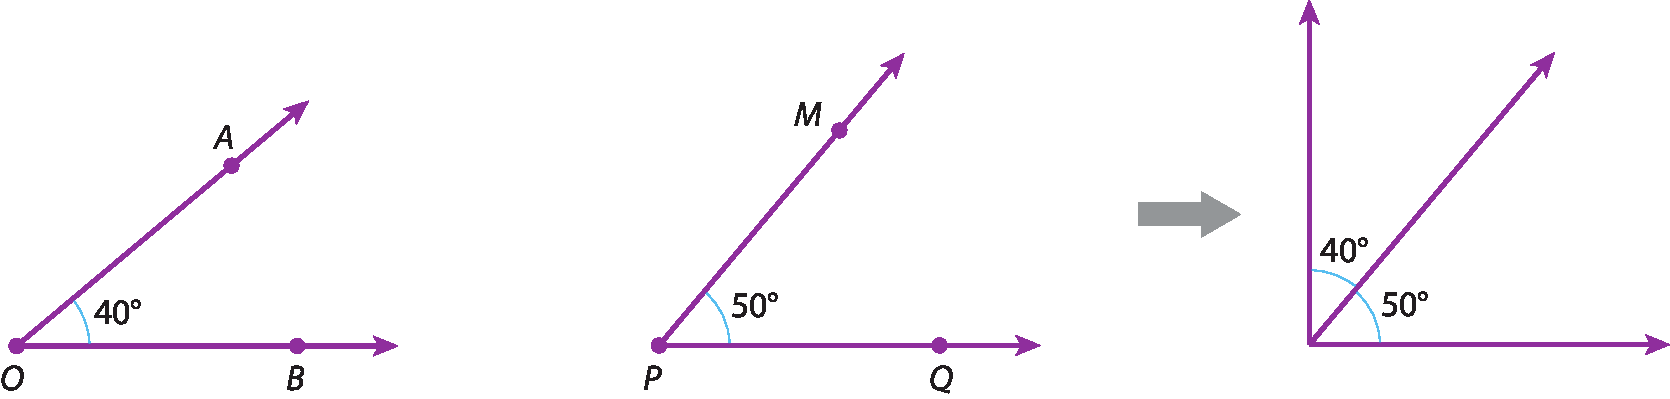 Ilustração. Ângulo AOB, formado pelas semirretas OA e OB, com origem no ponto O, tem medida de 40 graus.
Ao lado, ângulo MPQ, formado pelas semirretas PM e PQ, com origem no ponto P, tem medida de 50 graus.
Ao lado, seta cinza aponta para a junção dos ângulos 50 graus e 40 graus, lado a lado, sobre o mesmo ponto de origem das semirretas.